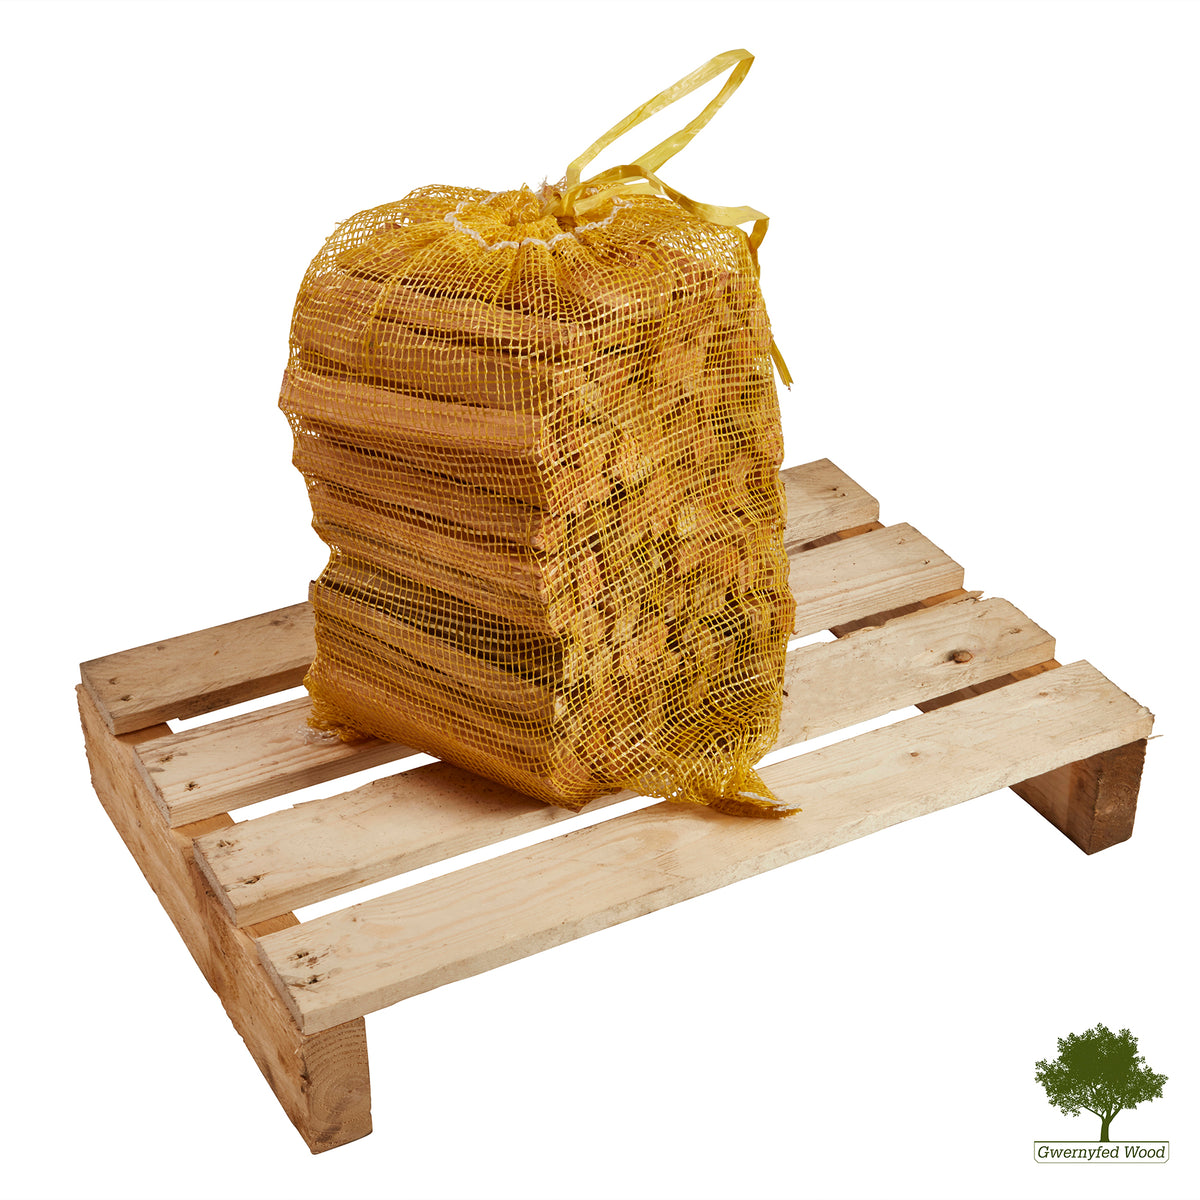 Kindling - Kiln Dried - Three Nets - 15kg - Gwernyfed Wood